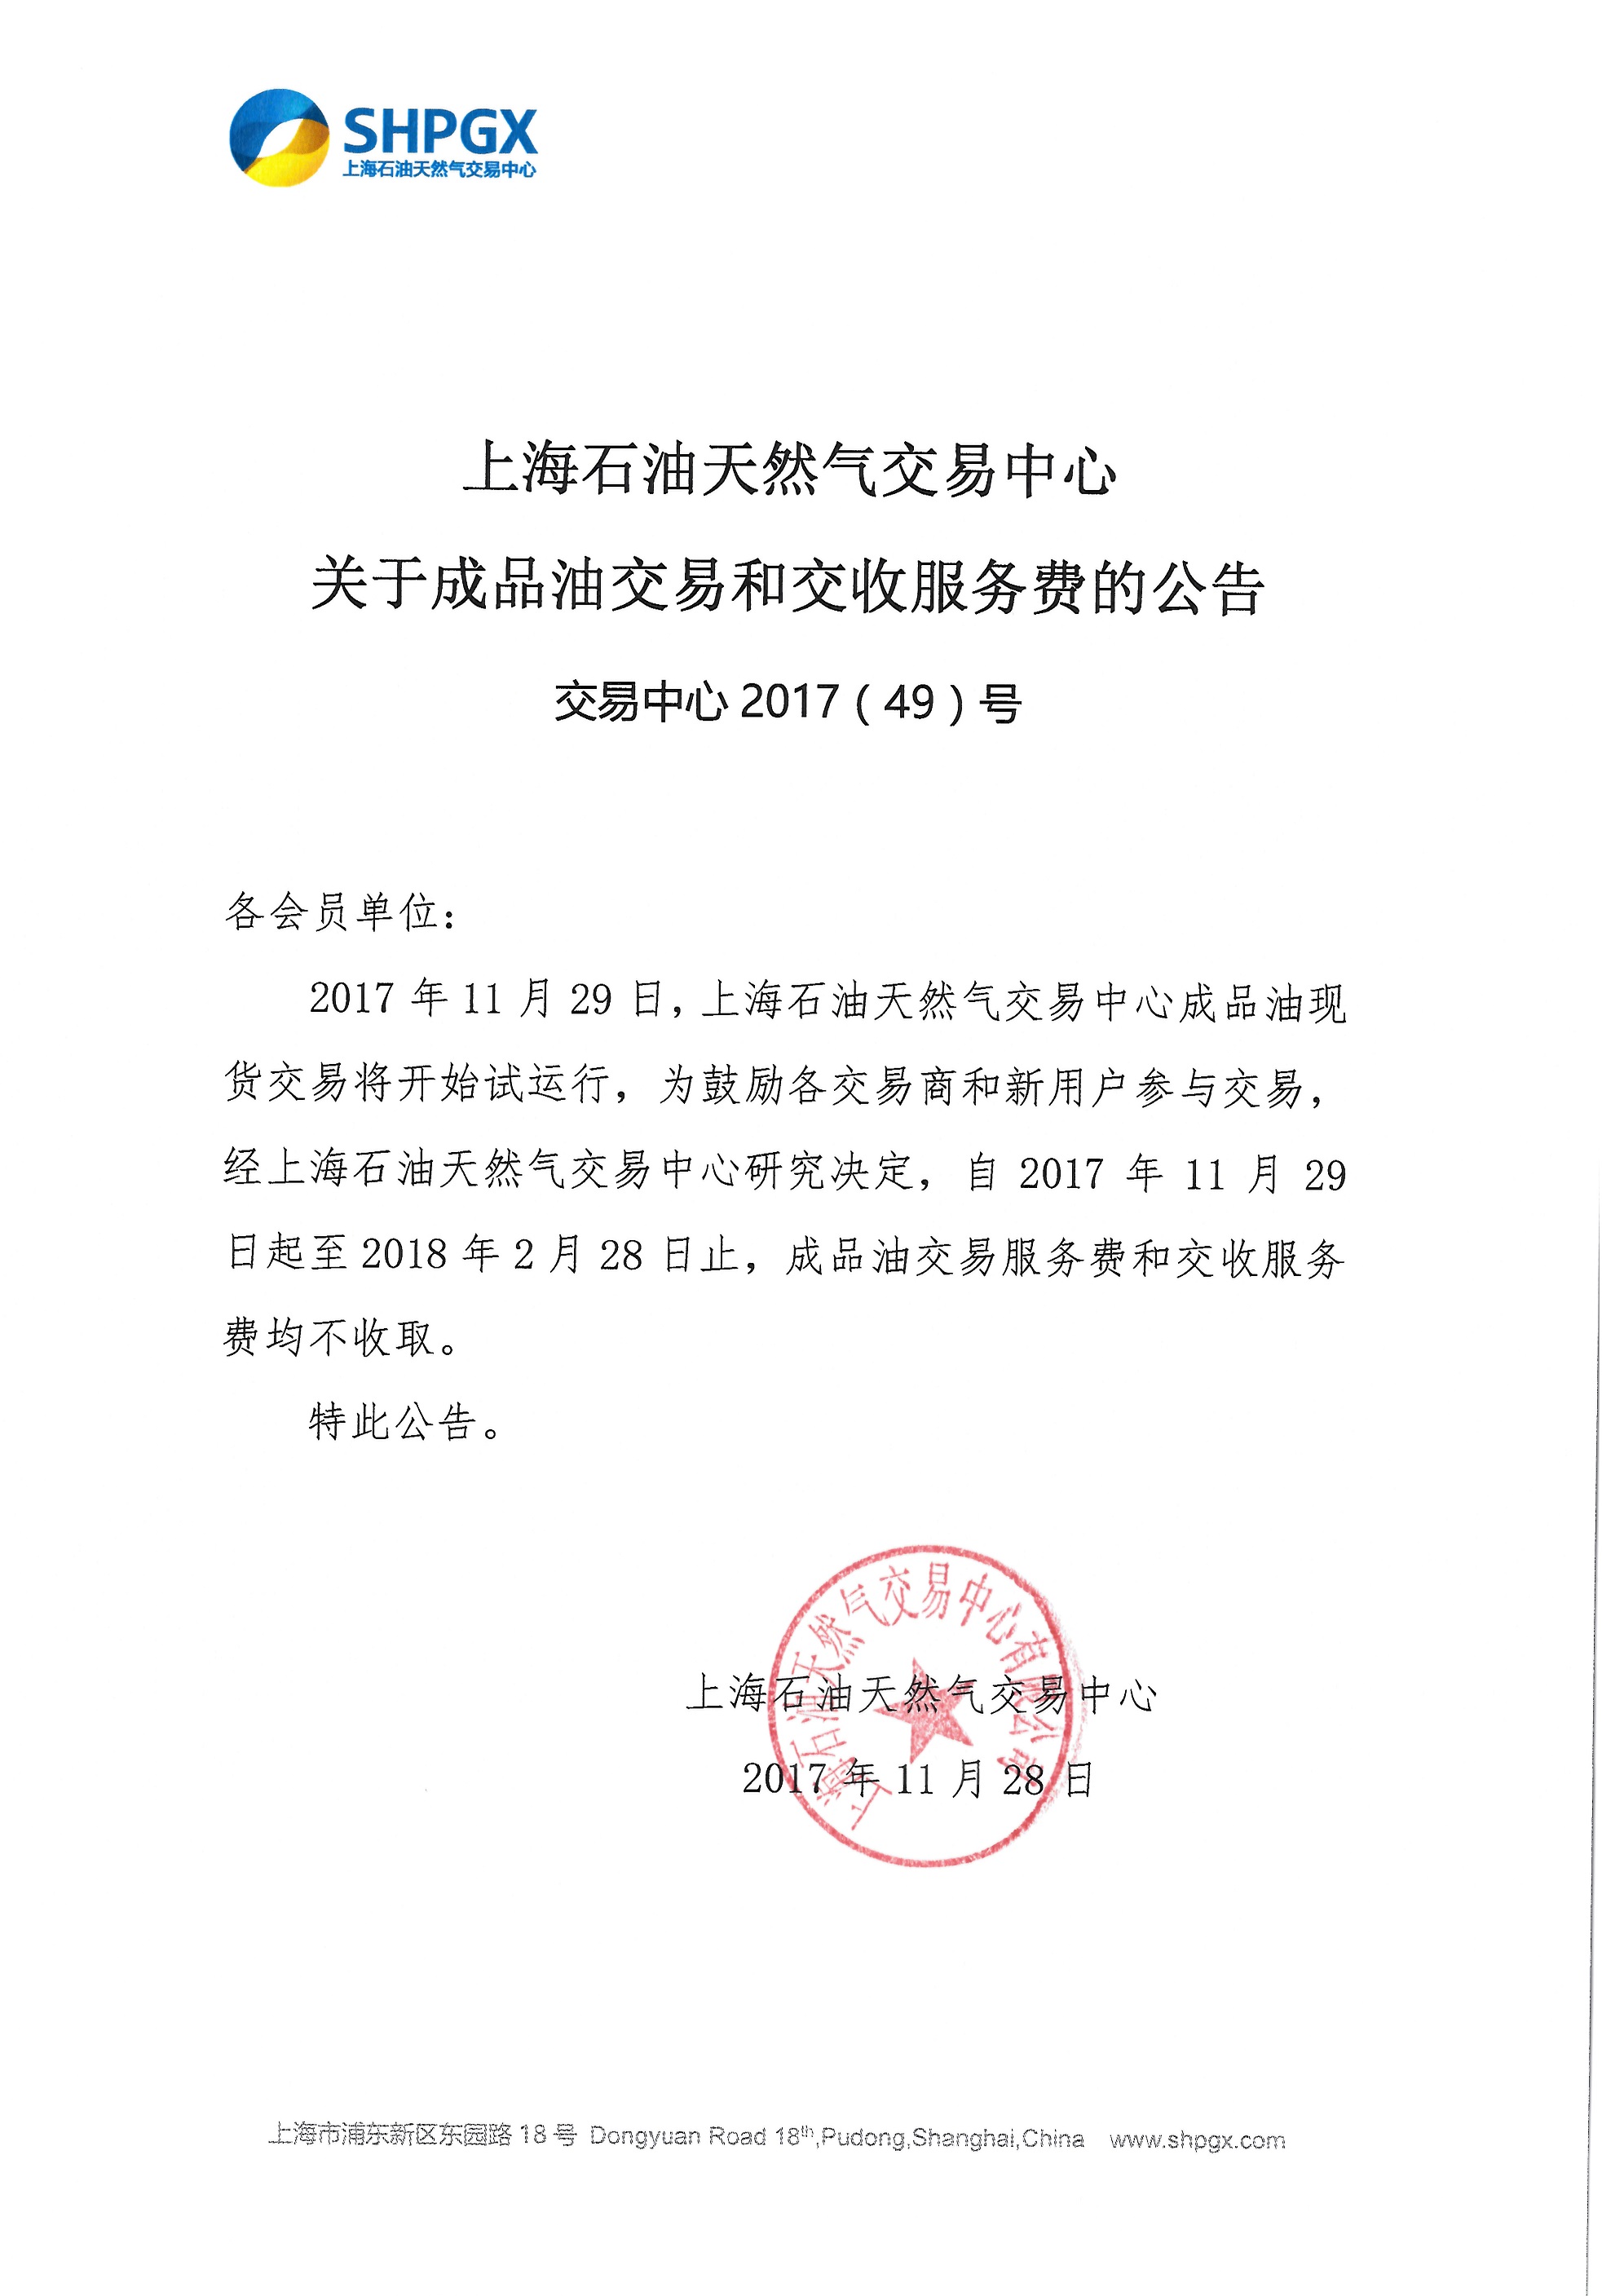 上海石油天然气交易中心关于成品油交易和交收服务费的公告